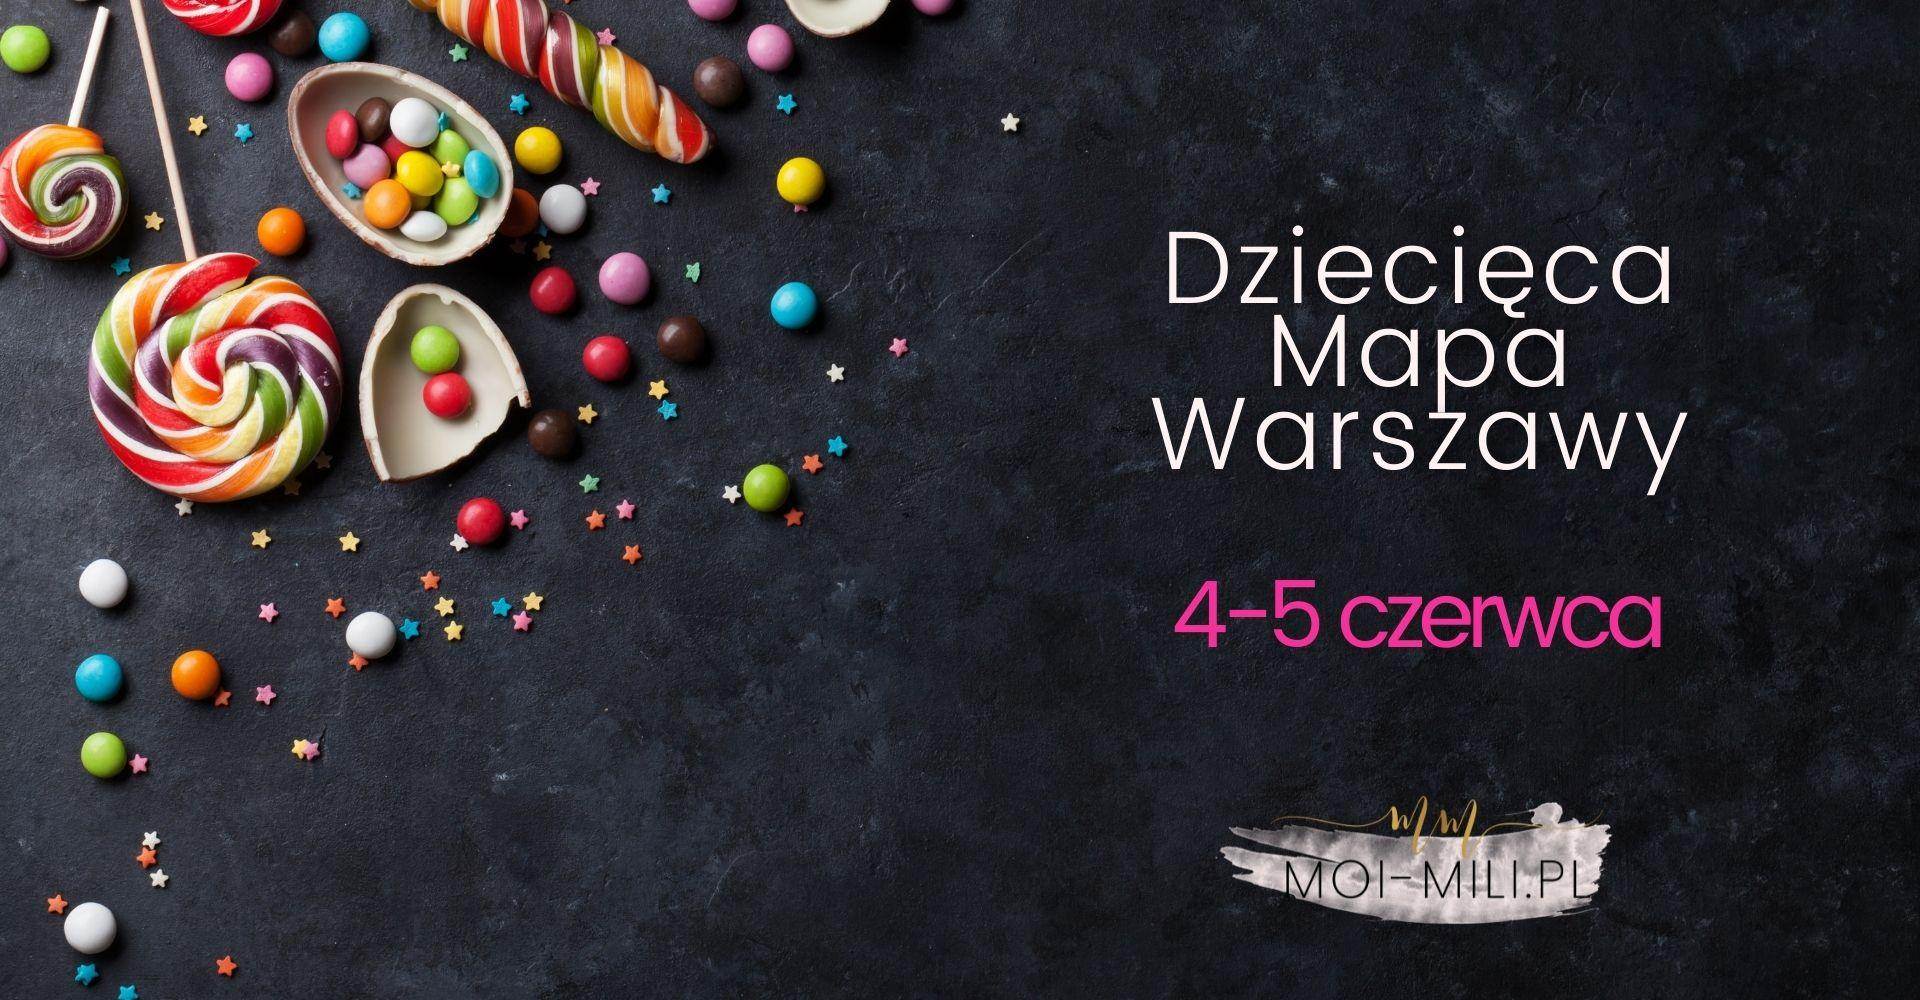 Weekendowa Zajawka, czyli co robić z dzieckiem w Warszawie 4-5 czerwca